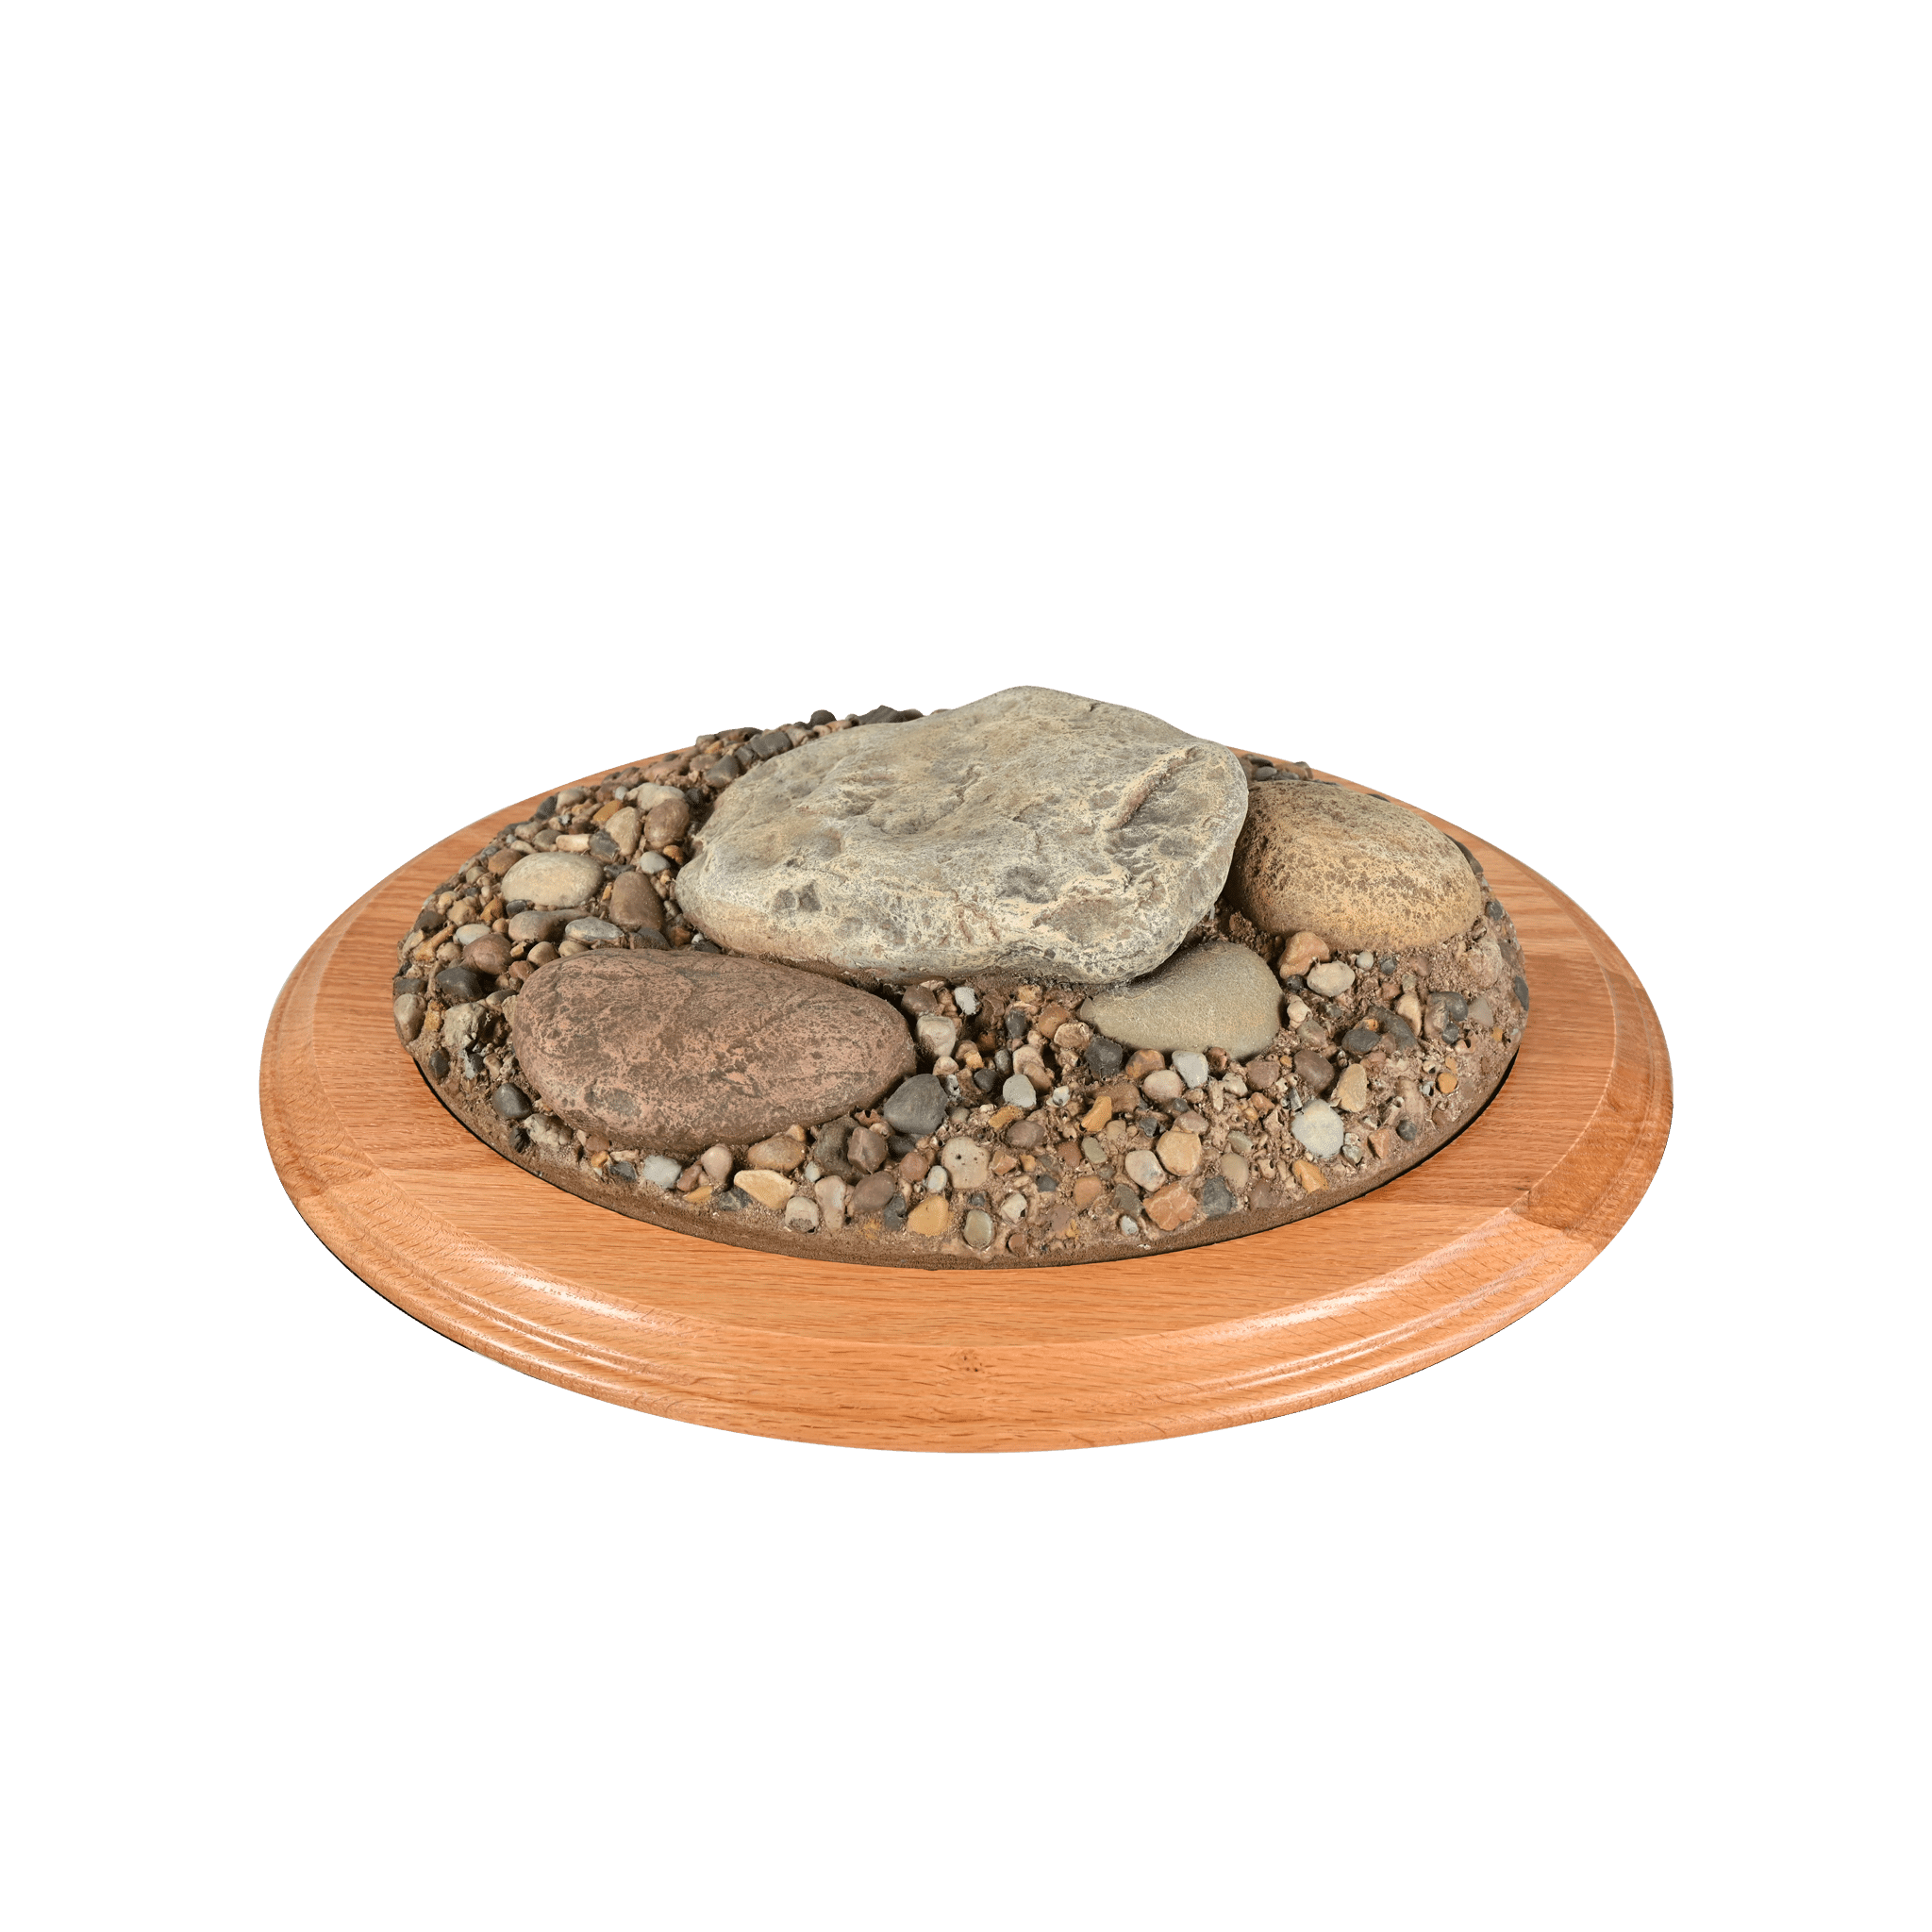 Rock Base (Large Oval) - Matuska Taxidermy Supply Company